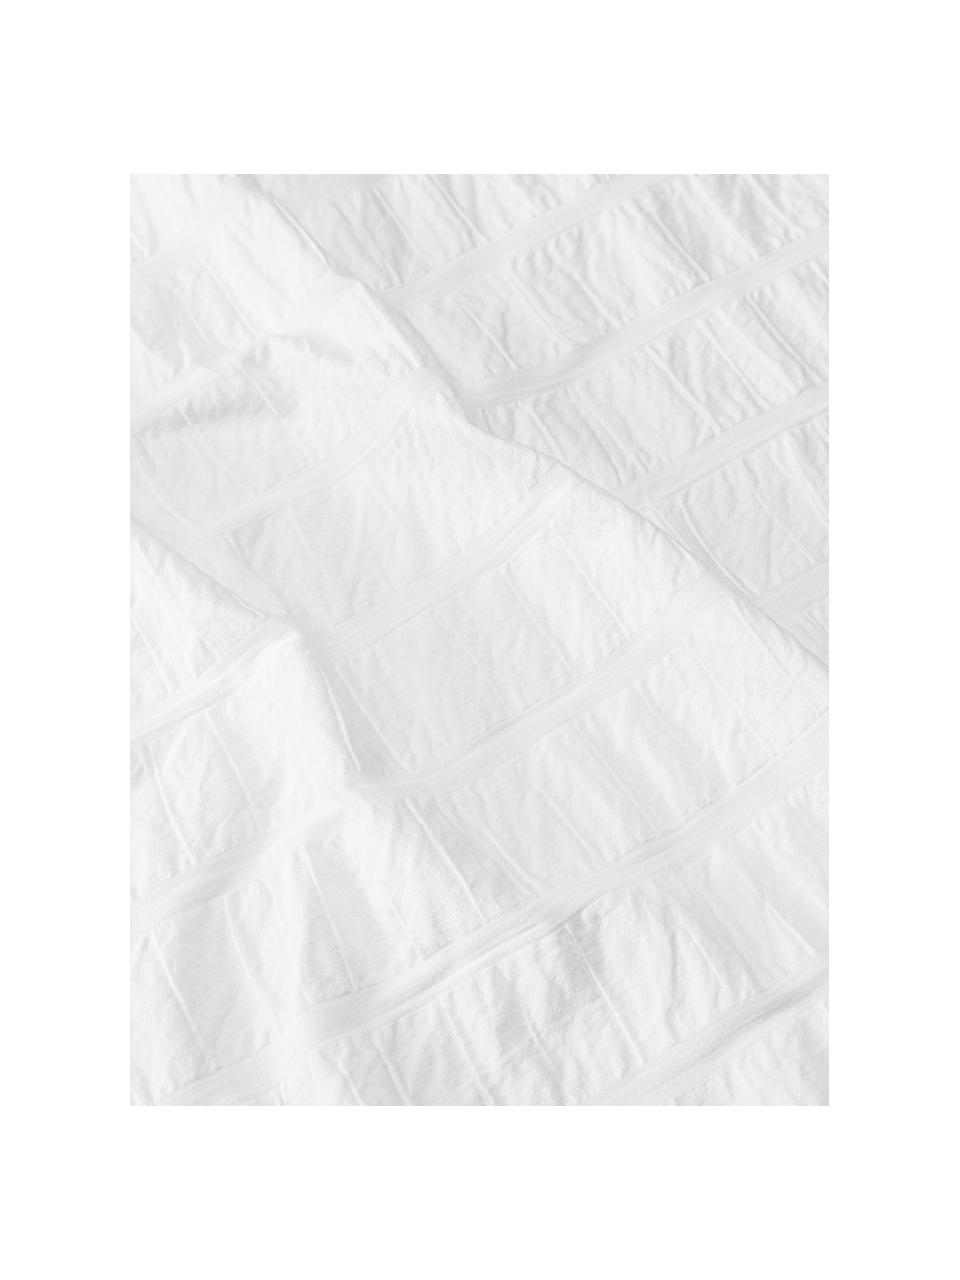 Katoenen kussenhoezen Esme in wit, 2 stuks﻿, Wit, B 60 x L 70 cm